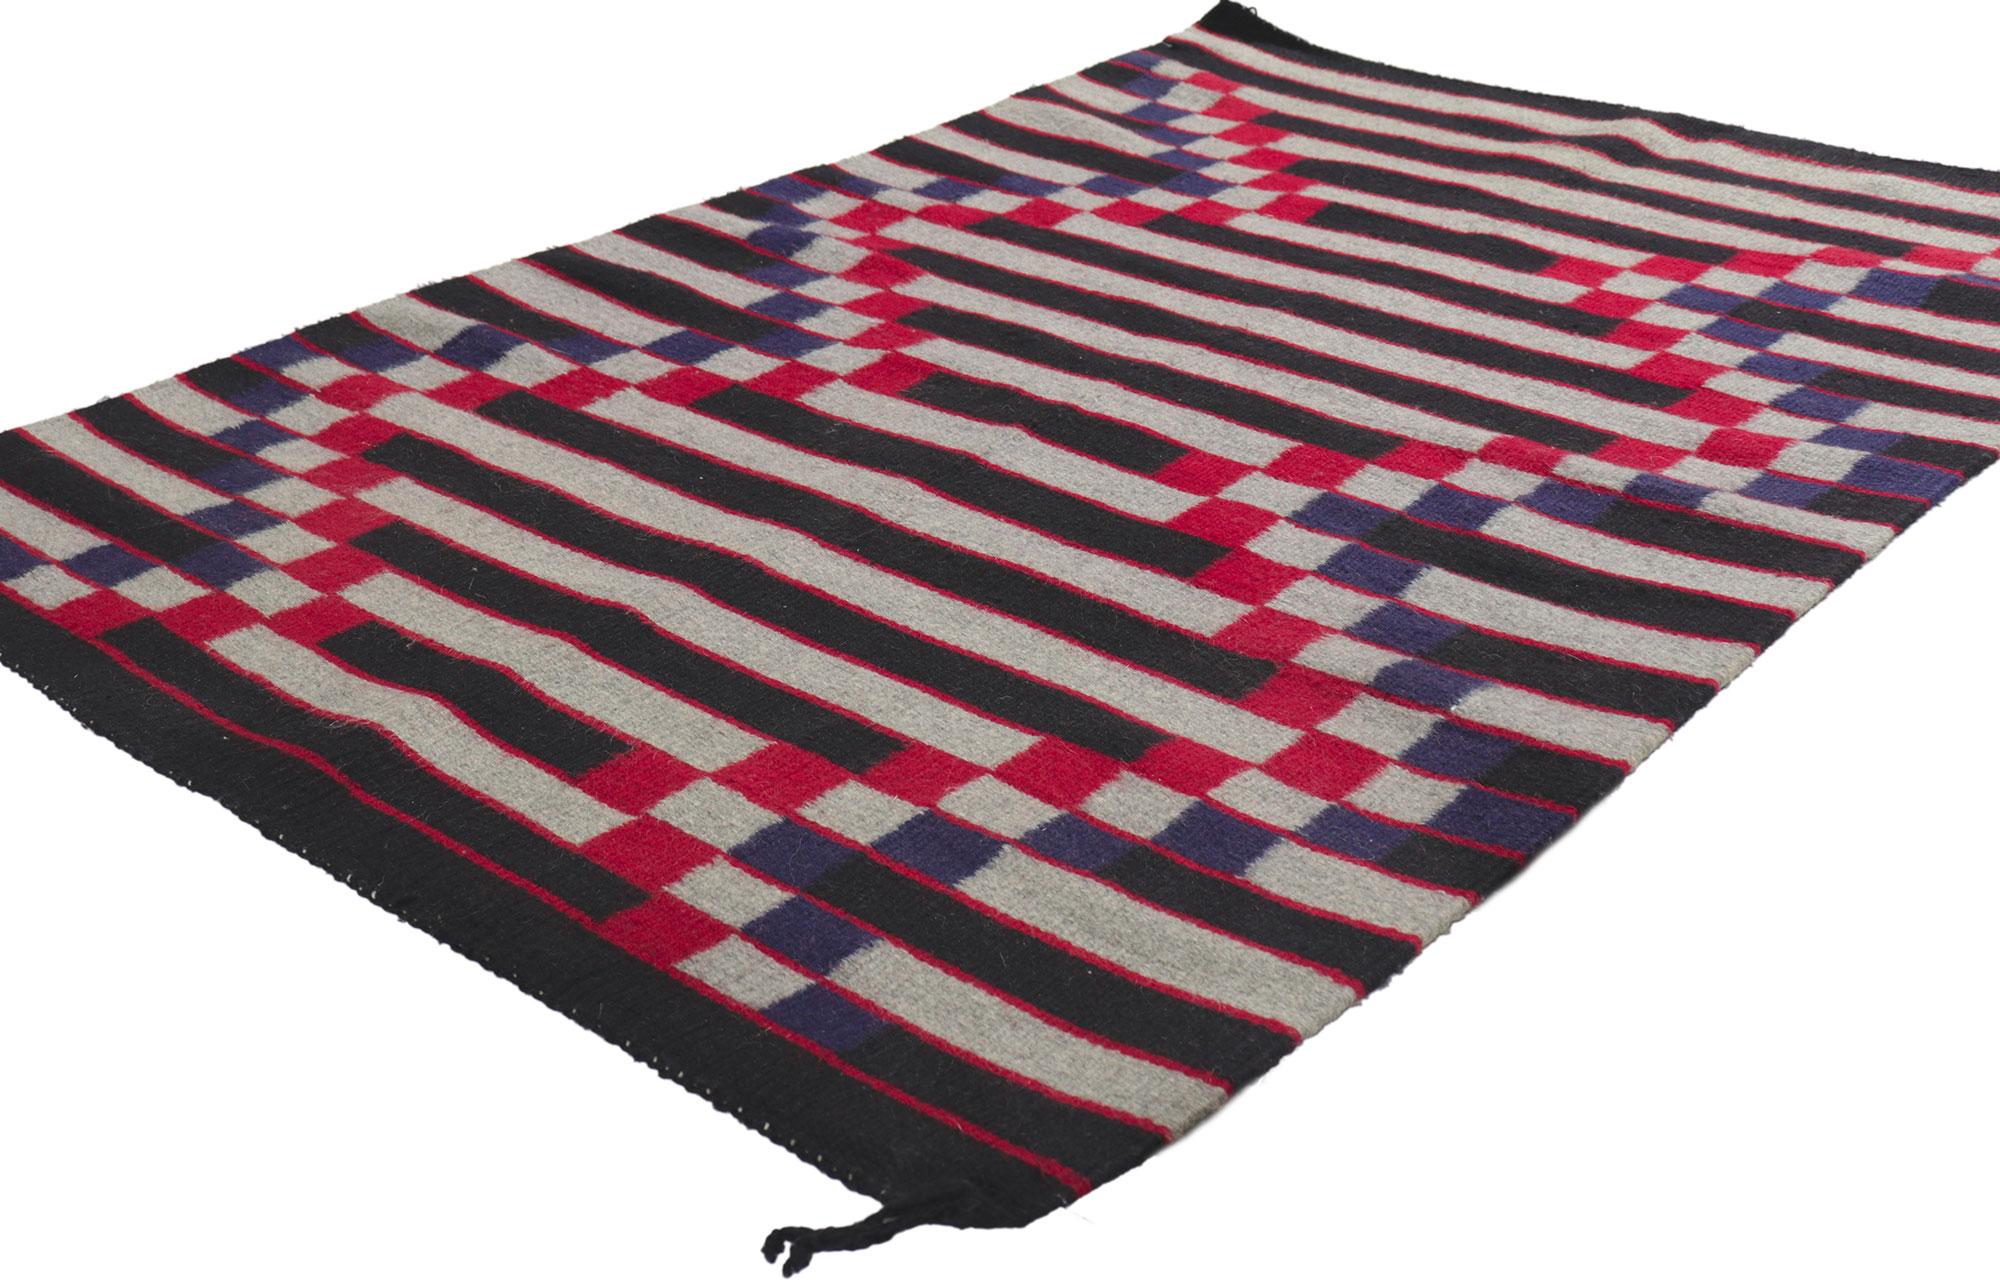 78423 Vintage Navajo-Teppich, 03'03 x 05'01. Dieser handgewebte Navajo-Teppich besticht durch seine unglaubliche Detailtreue und Textur und ist eine faszinierende Vision gewebter Schönheit. Das auffällige Streifenmuster und die lebendige Farbgebung